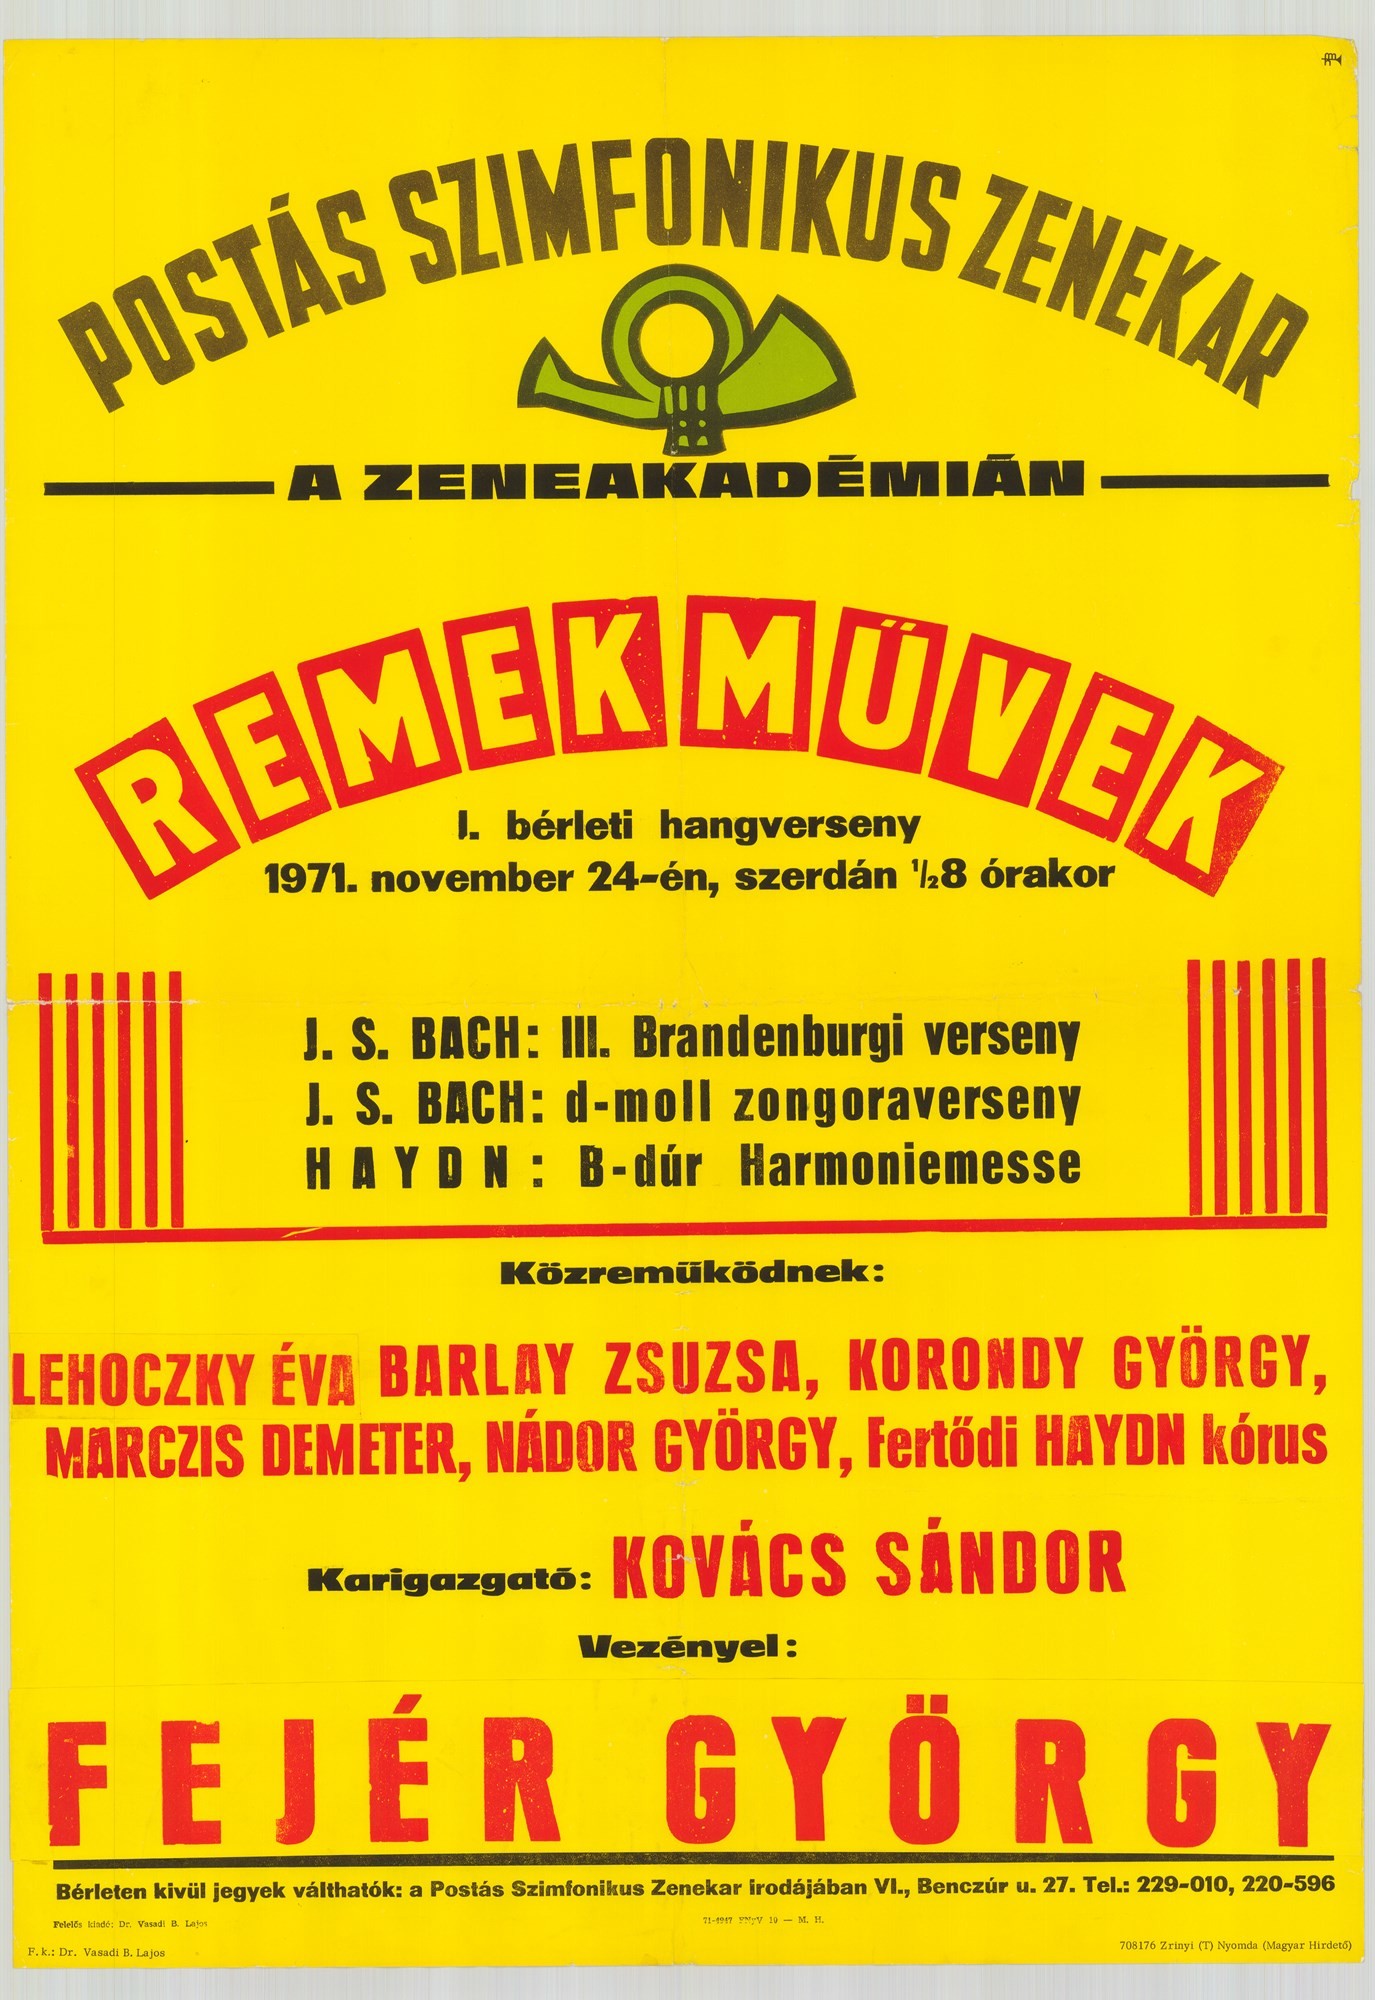 Plakát - Postás Szimfonikus Zenekar a Zeneakadémián, Remekművek, 1971 (Postamúzeum CC BY-NC-SA)